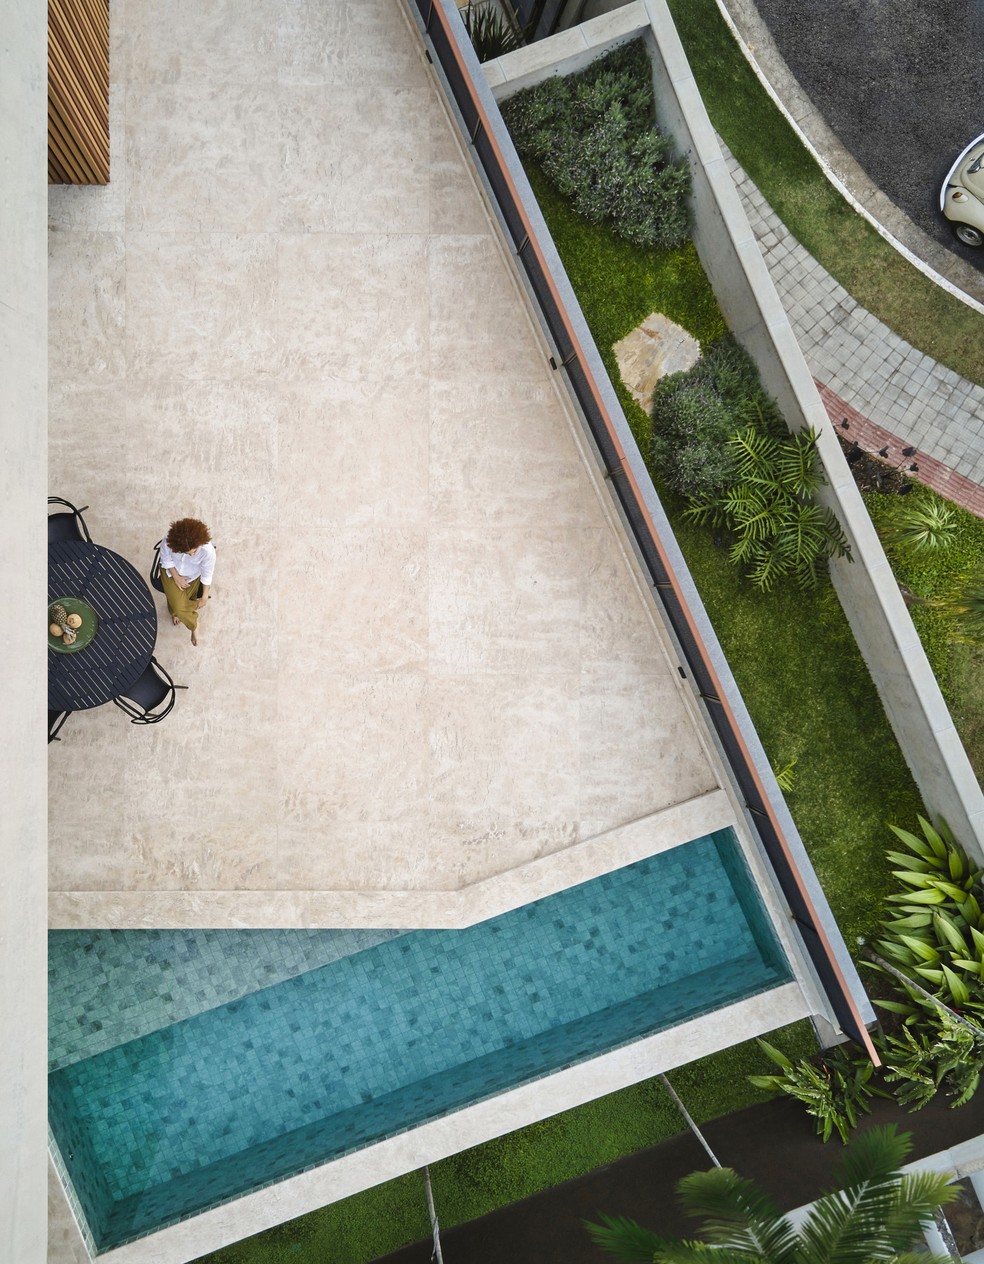 VARANDA | A piscina disposta na varanda cria um ambiente único e mantém a proposta de integração com a natureza — Foto: Jomar Bragança / Divulgação | Produção: Studio Tertúlia